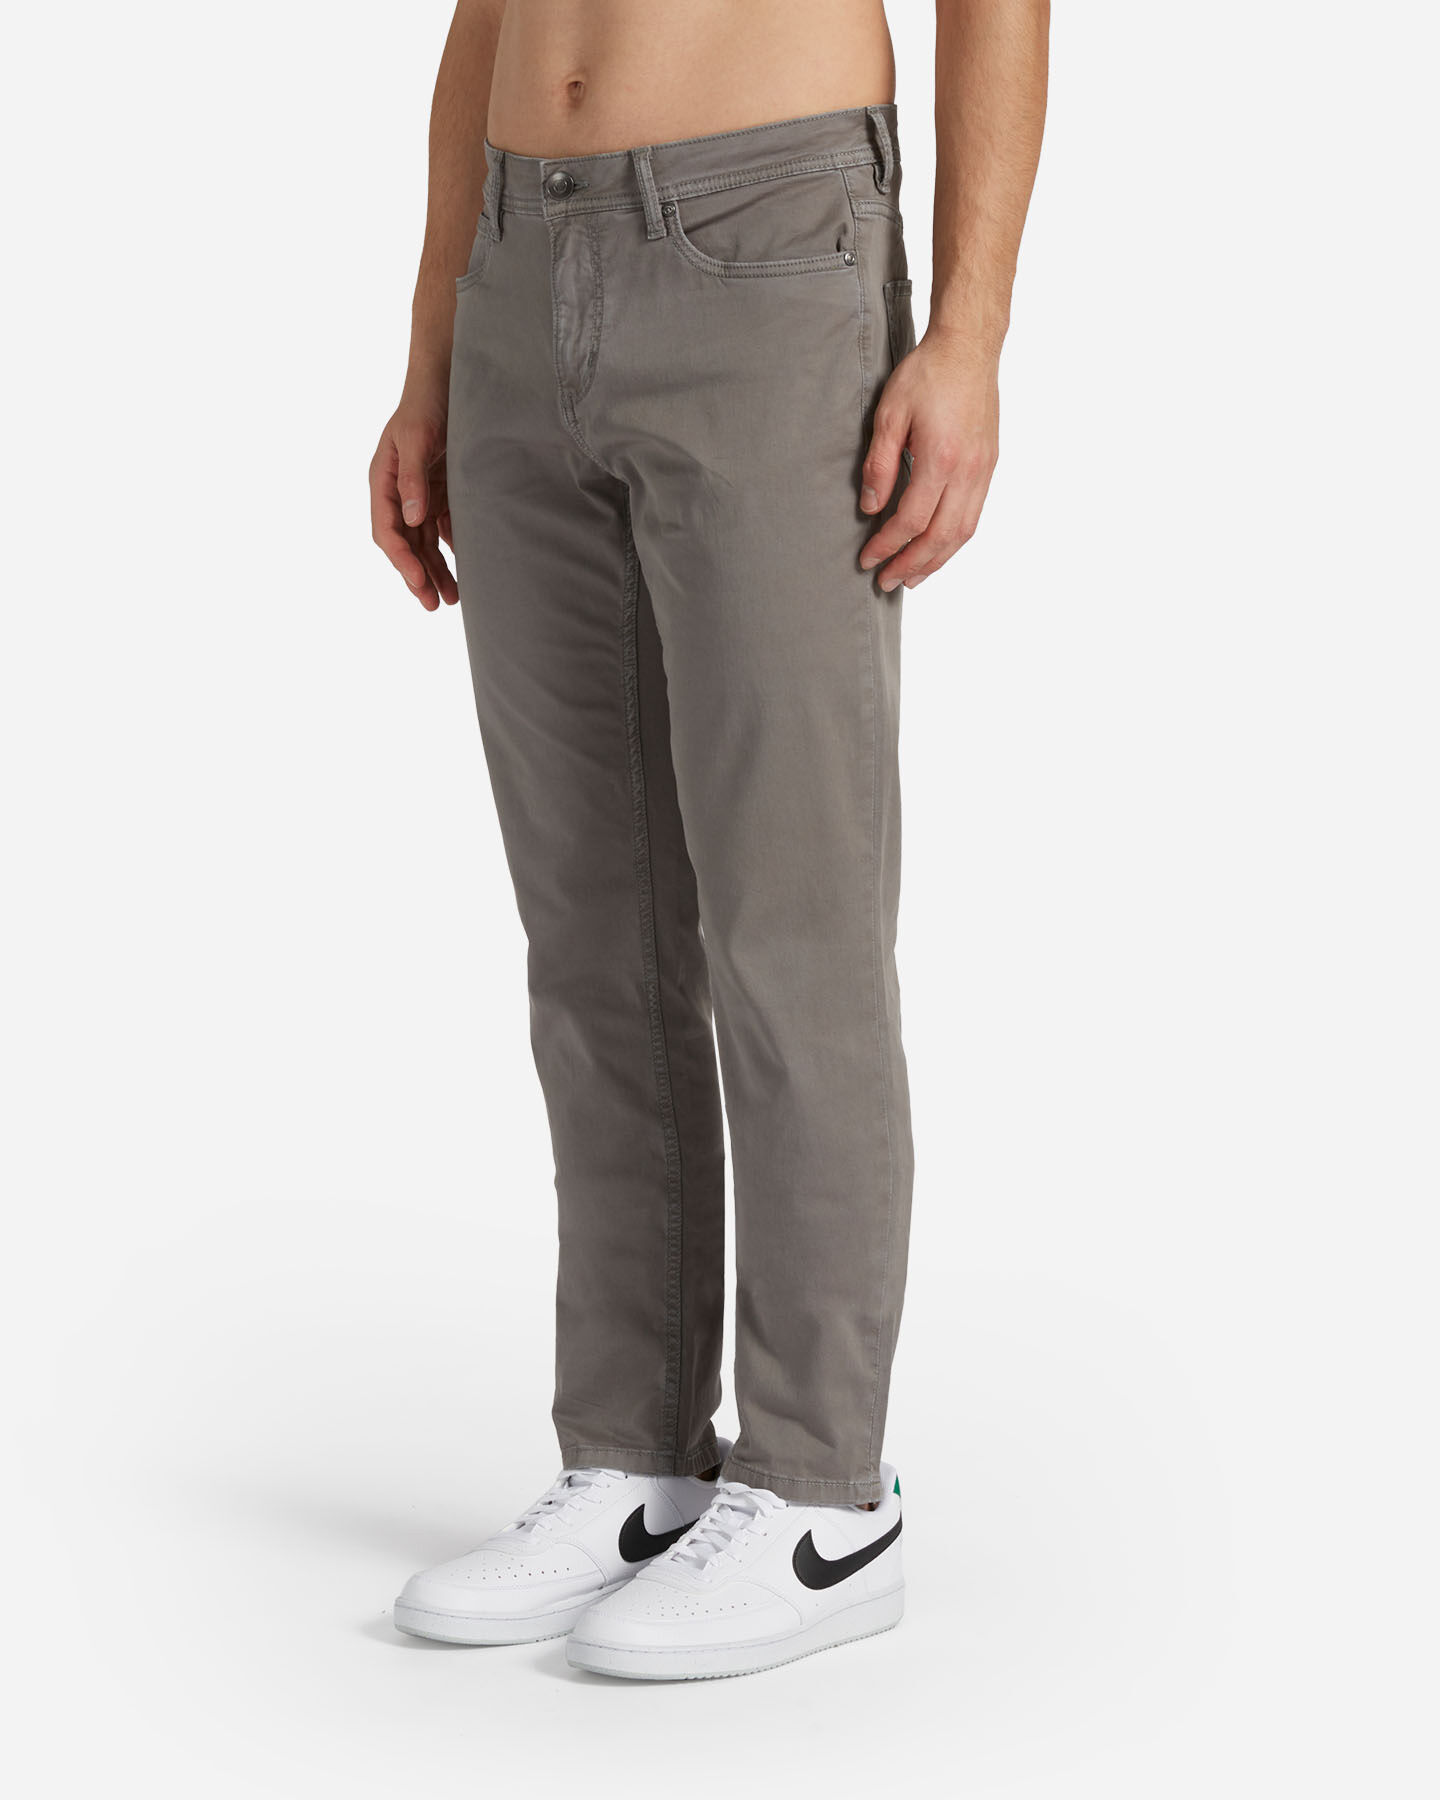  Pantalone DACK'S ESSENTIAL M S4129741|1115|44 scatto 2